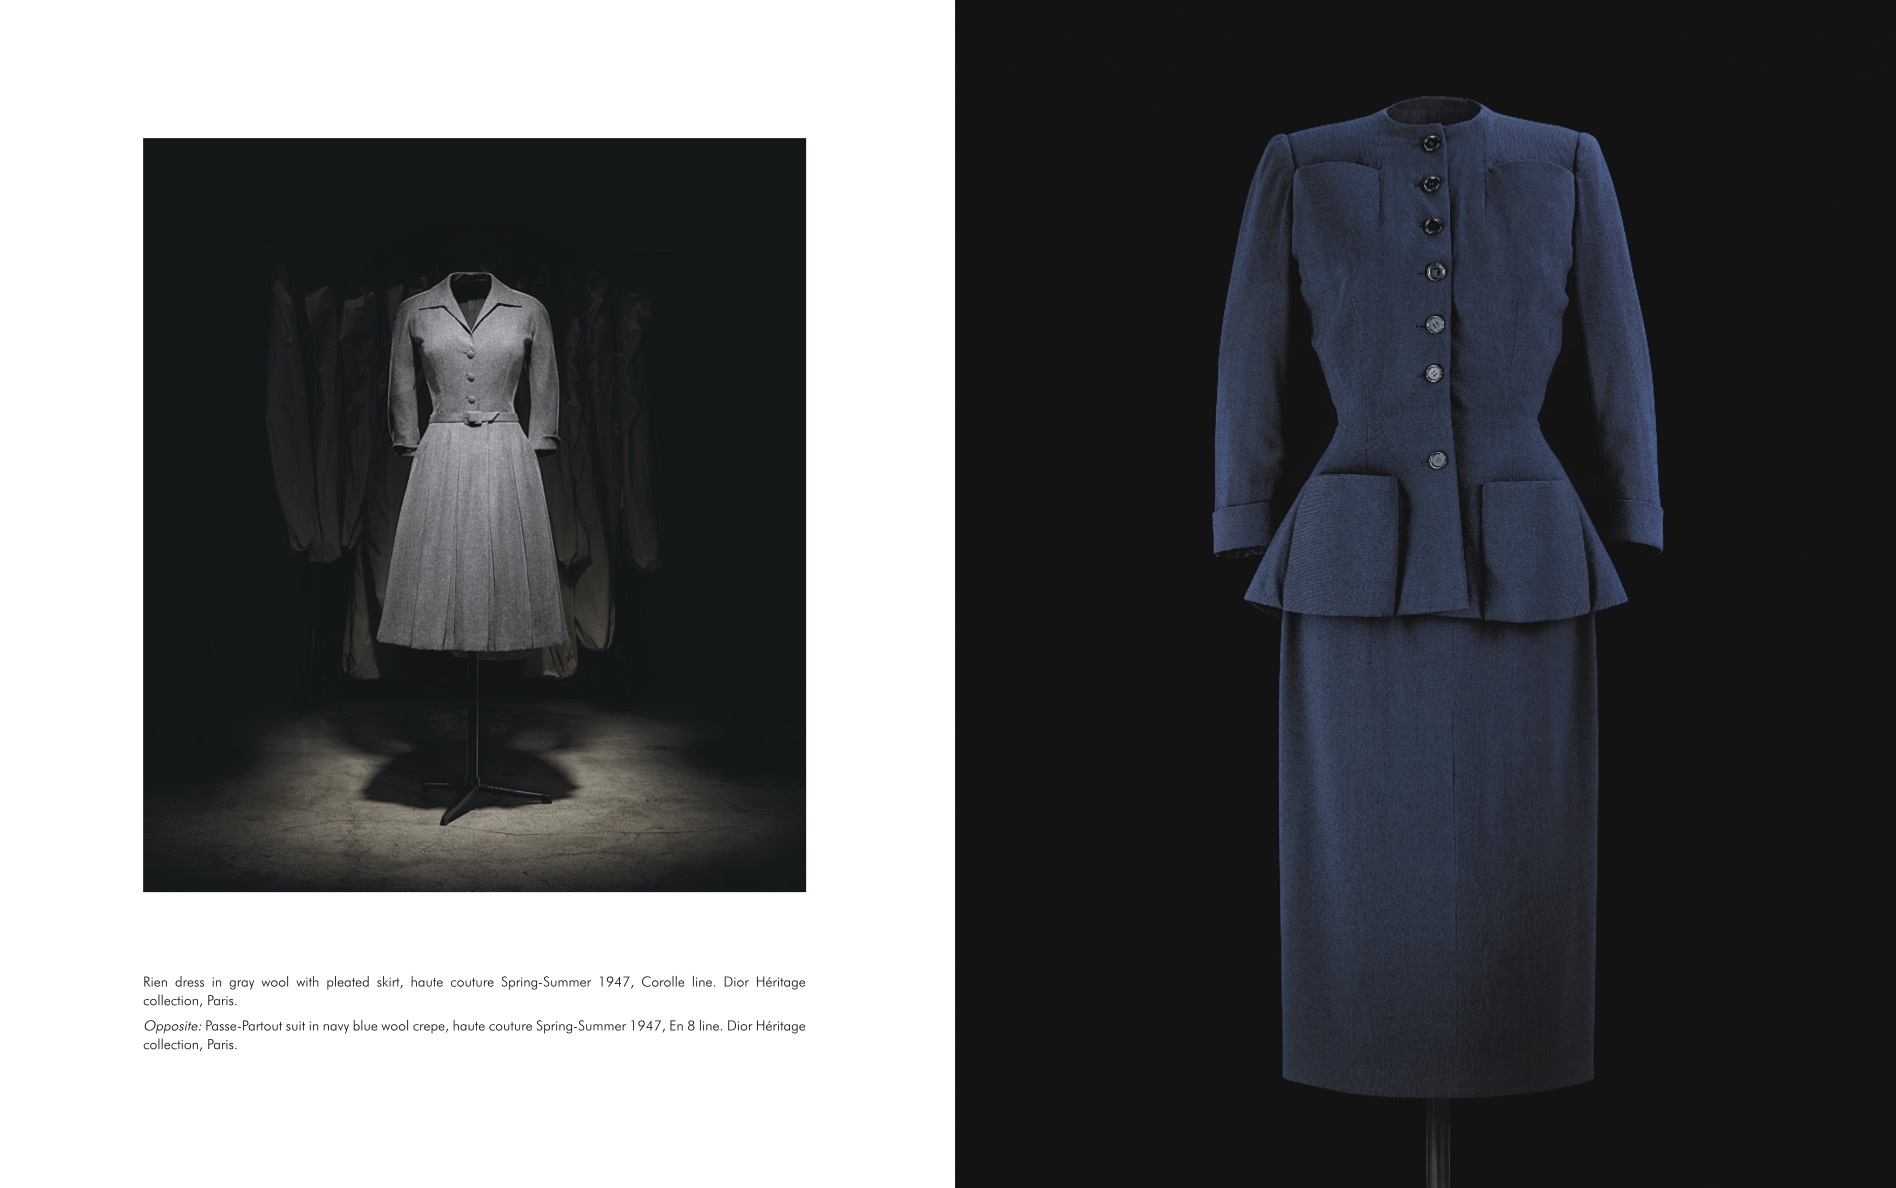 Dior опублікували онлайн-версію книги про творчість Крістіана Діора